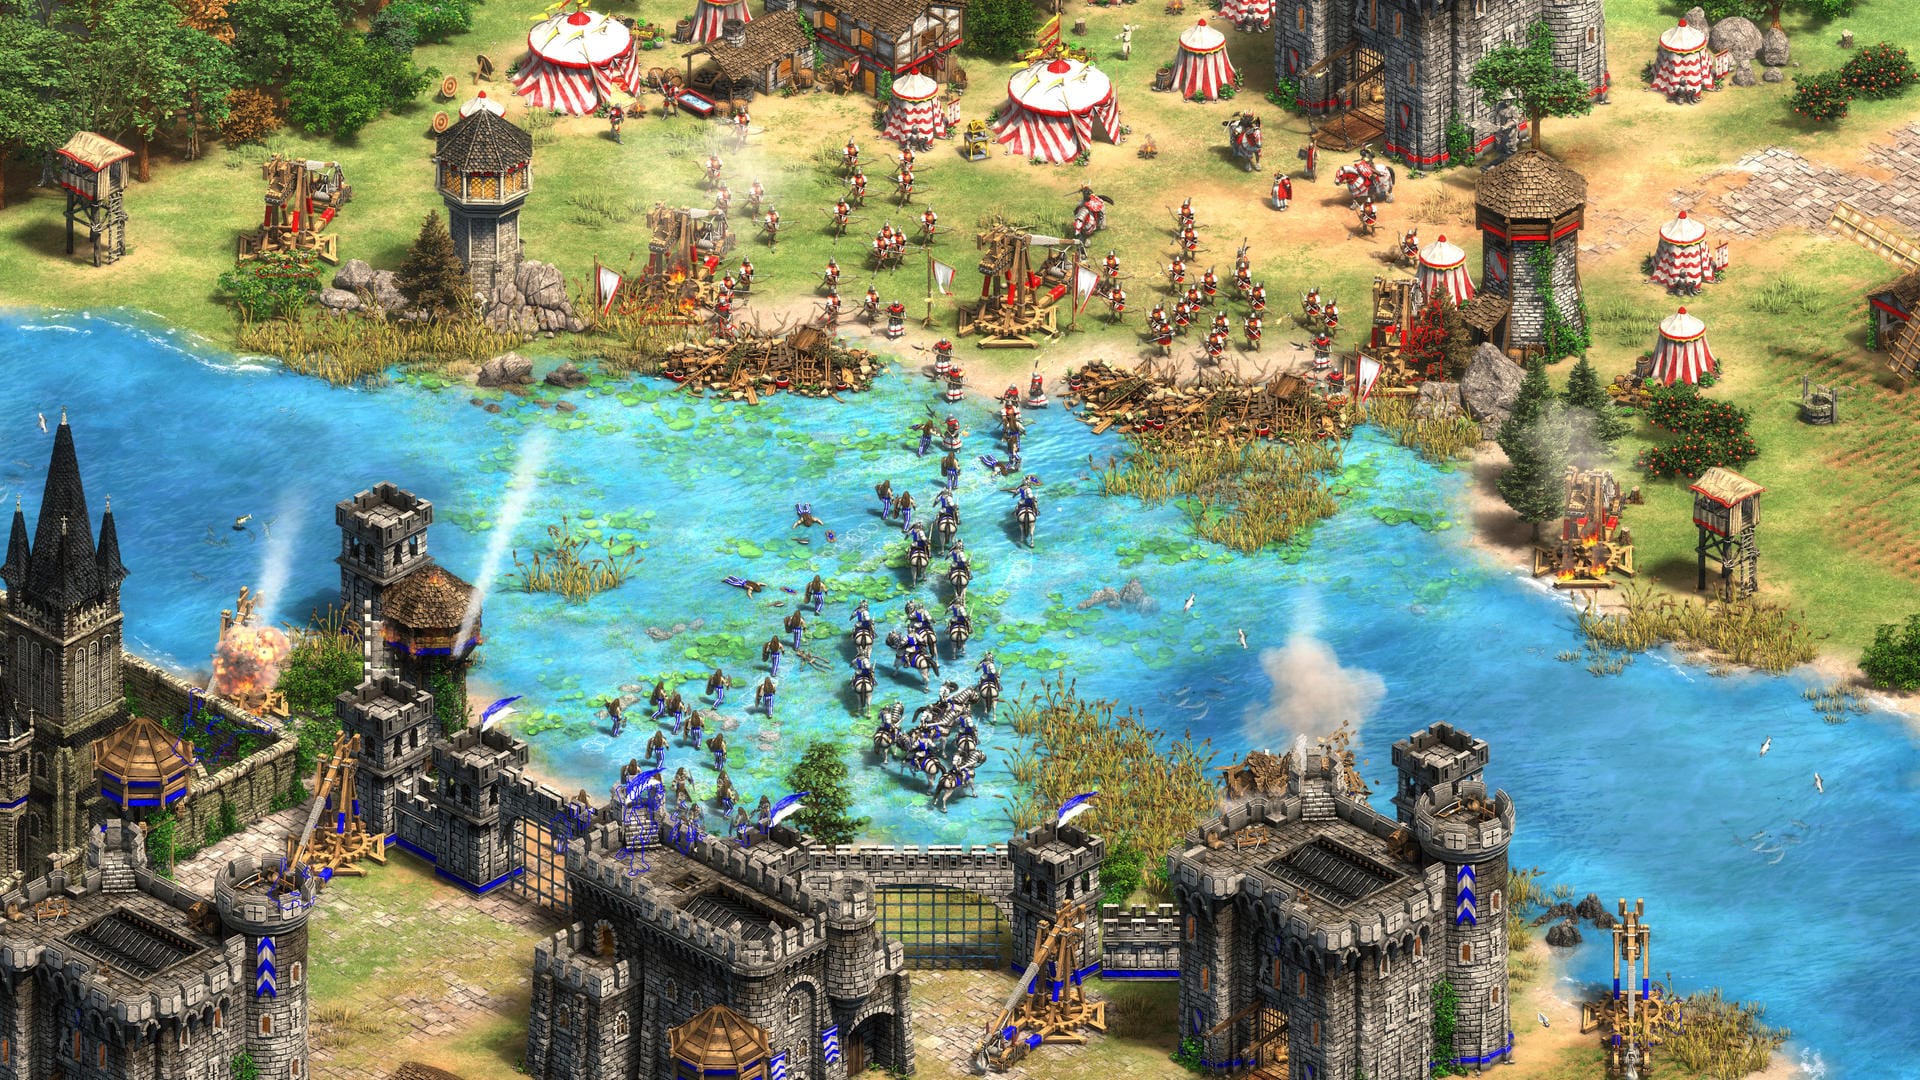 "Age of Empires 2: Definitive Edition": Der knapp 20 Jahre alte Echtzeitstrategie-Klassiker "Age of Empires 2" bekommt noch 2019 ein vollwertiges Remake inklusive einer neuen Kampagne.